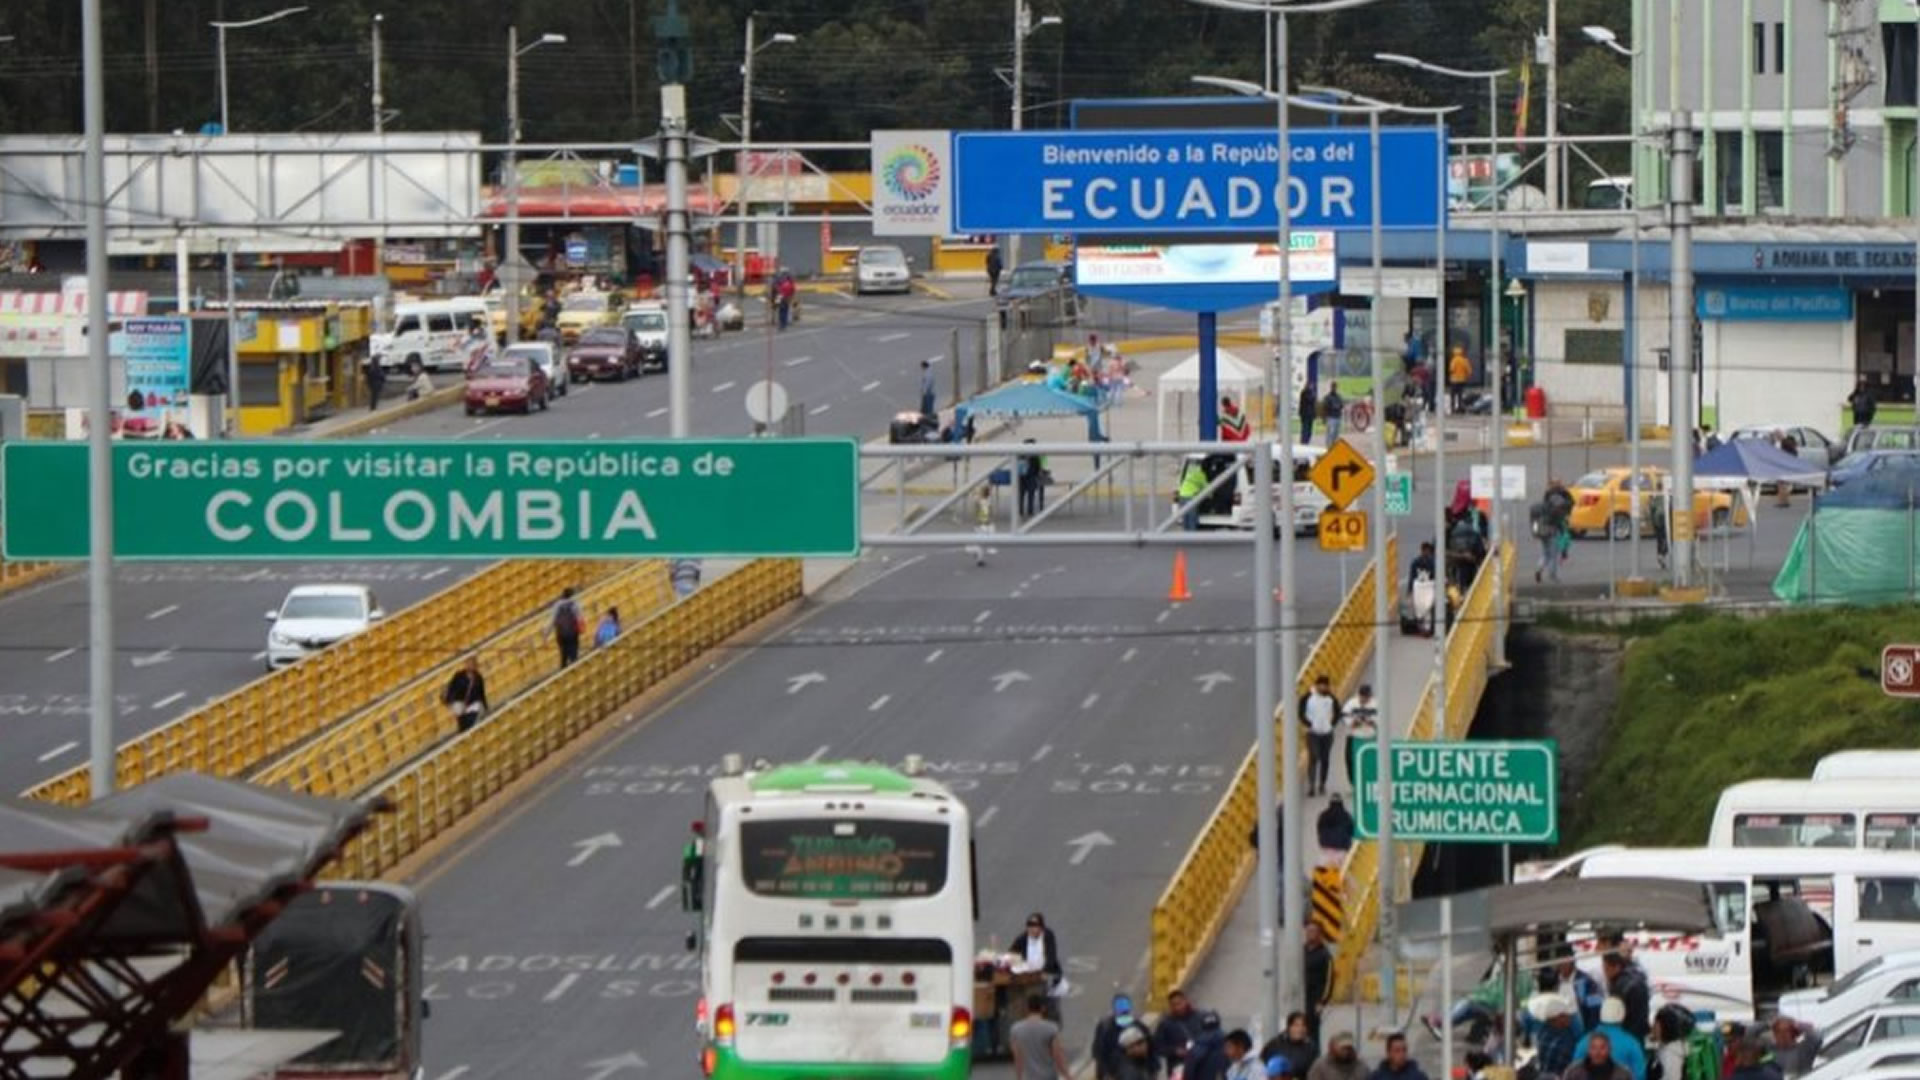 Para cruzar la frontera colombo- ecuatoriana, los connacionales de Ecuador solo necesitan su documento de identidad, no su pasaporte. (EFE)